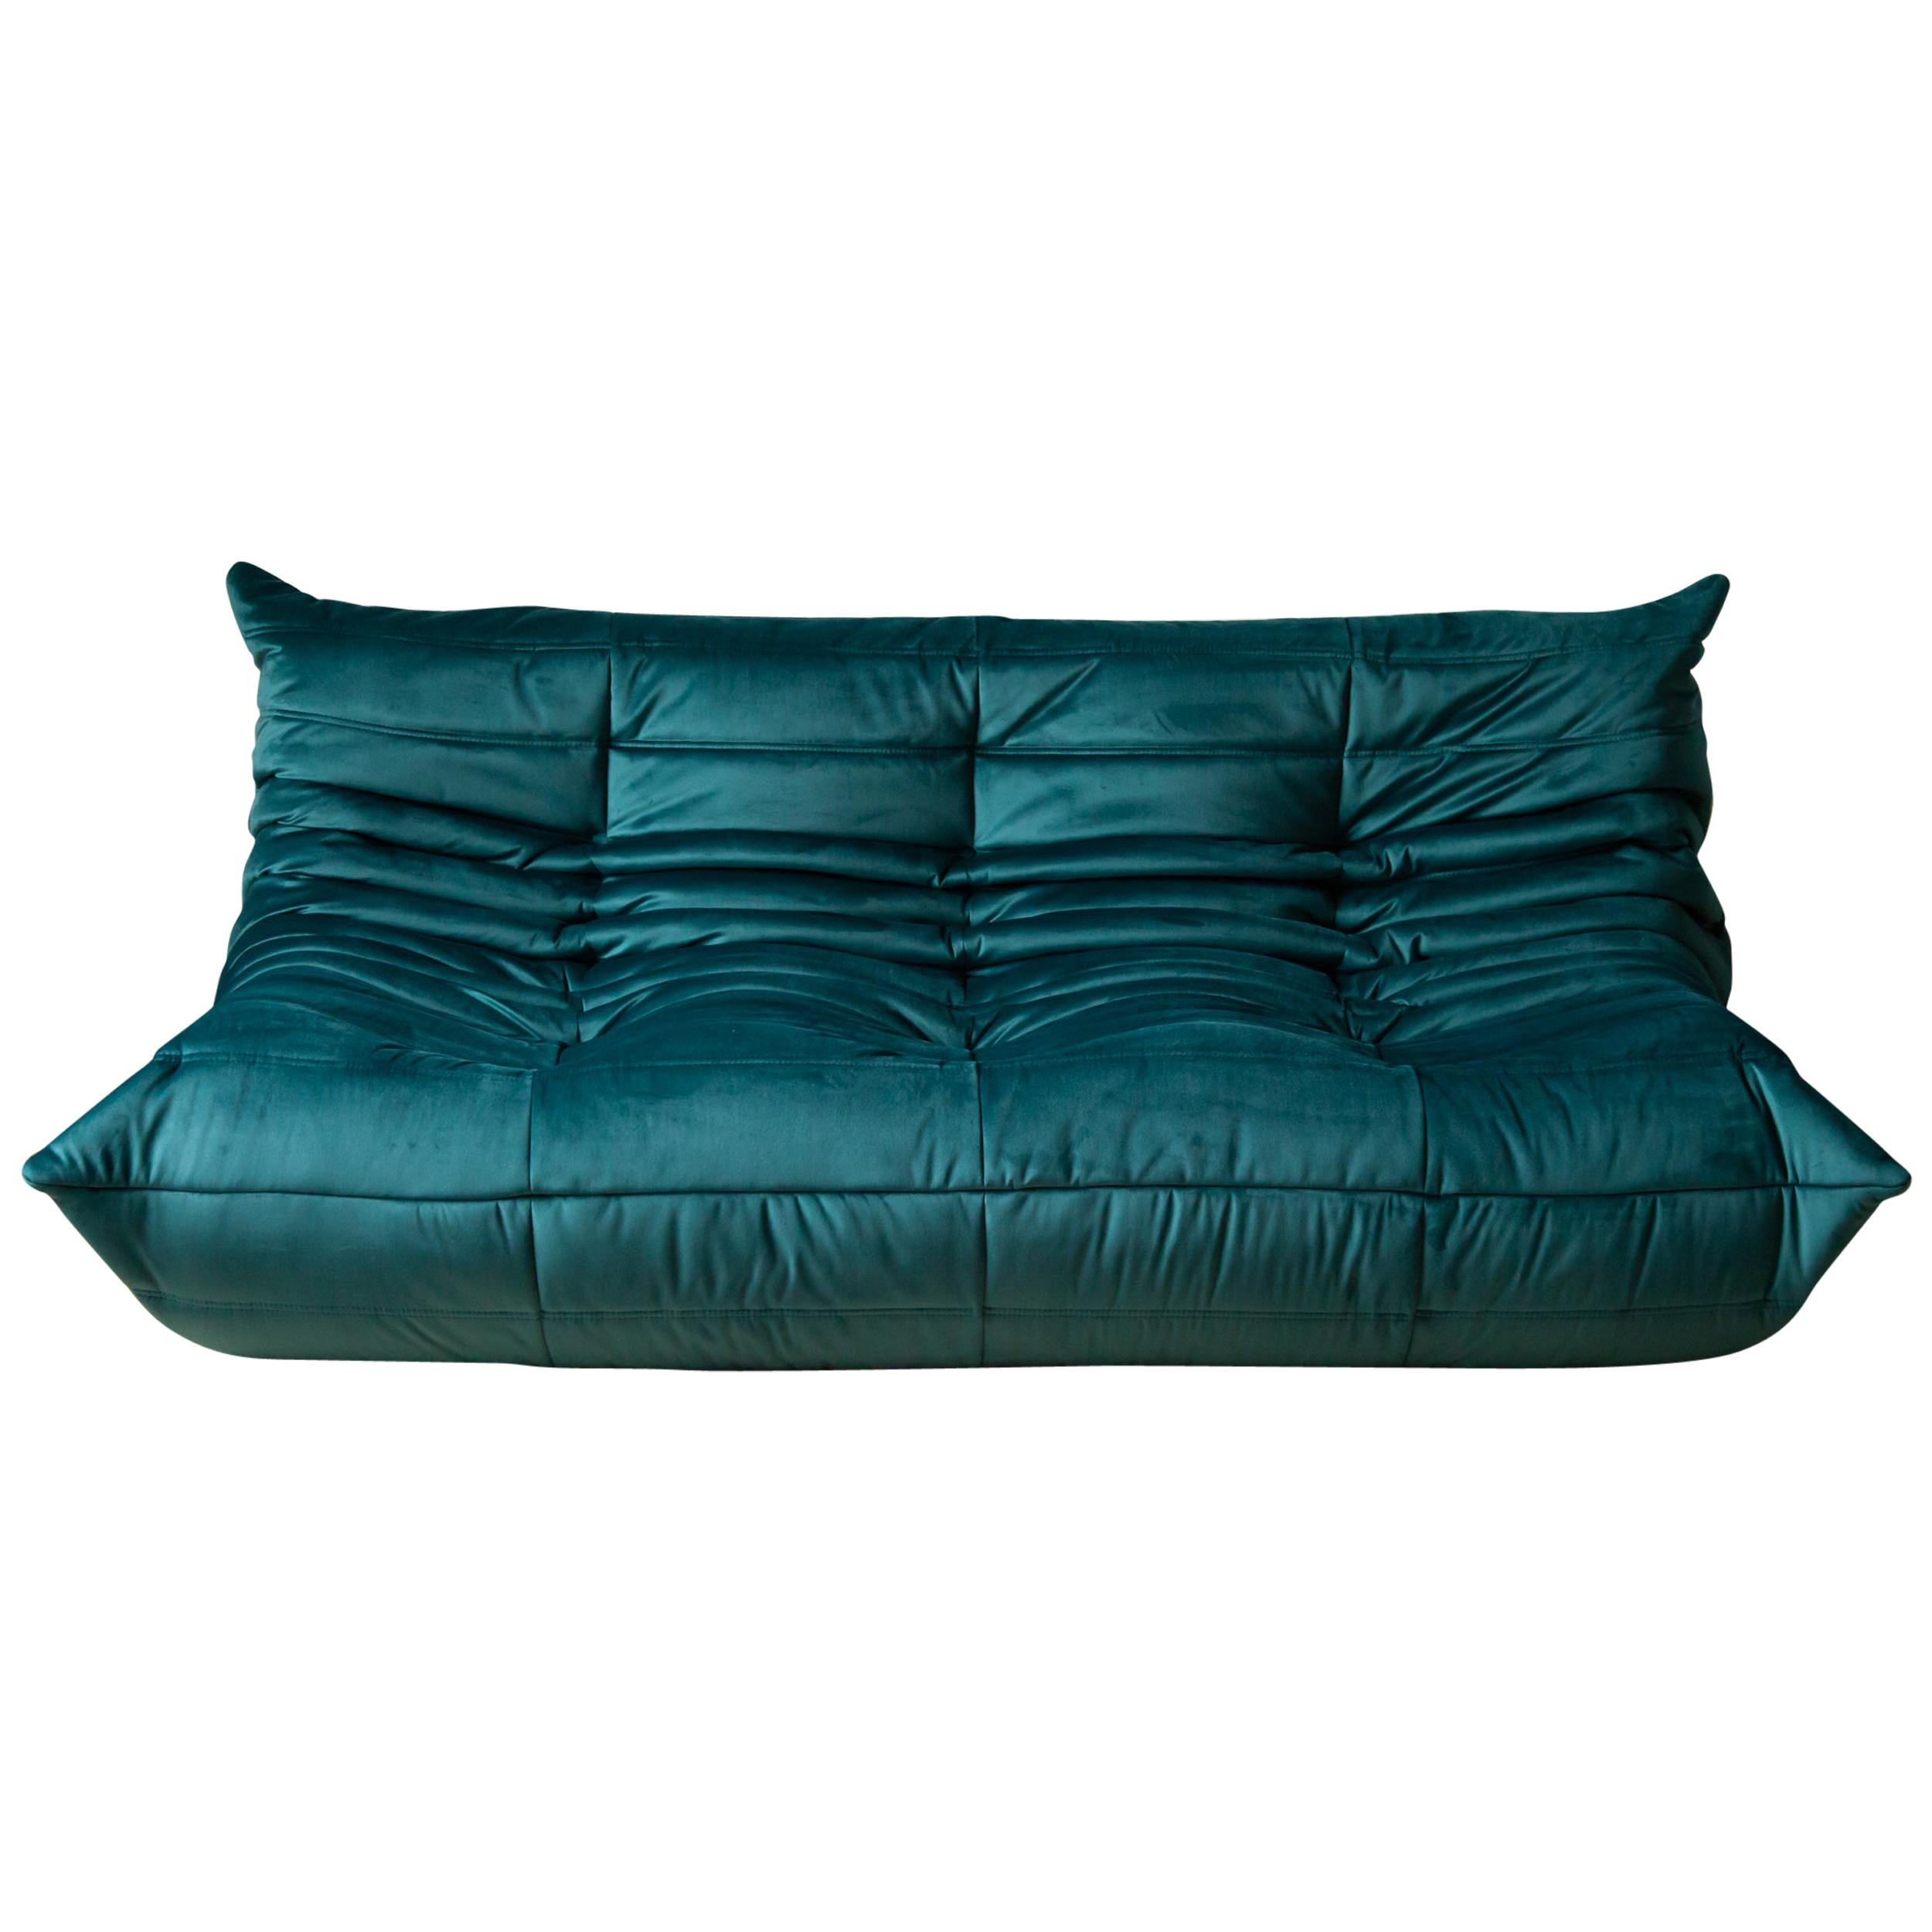 Togo 3-Seat Sofa in Blue-Green Velvet by Michel Ducaroy for Ligne Roset For Sale